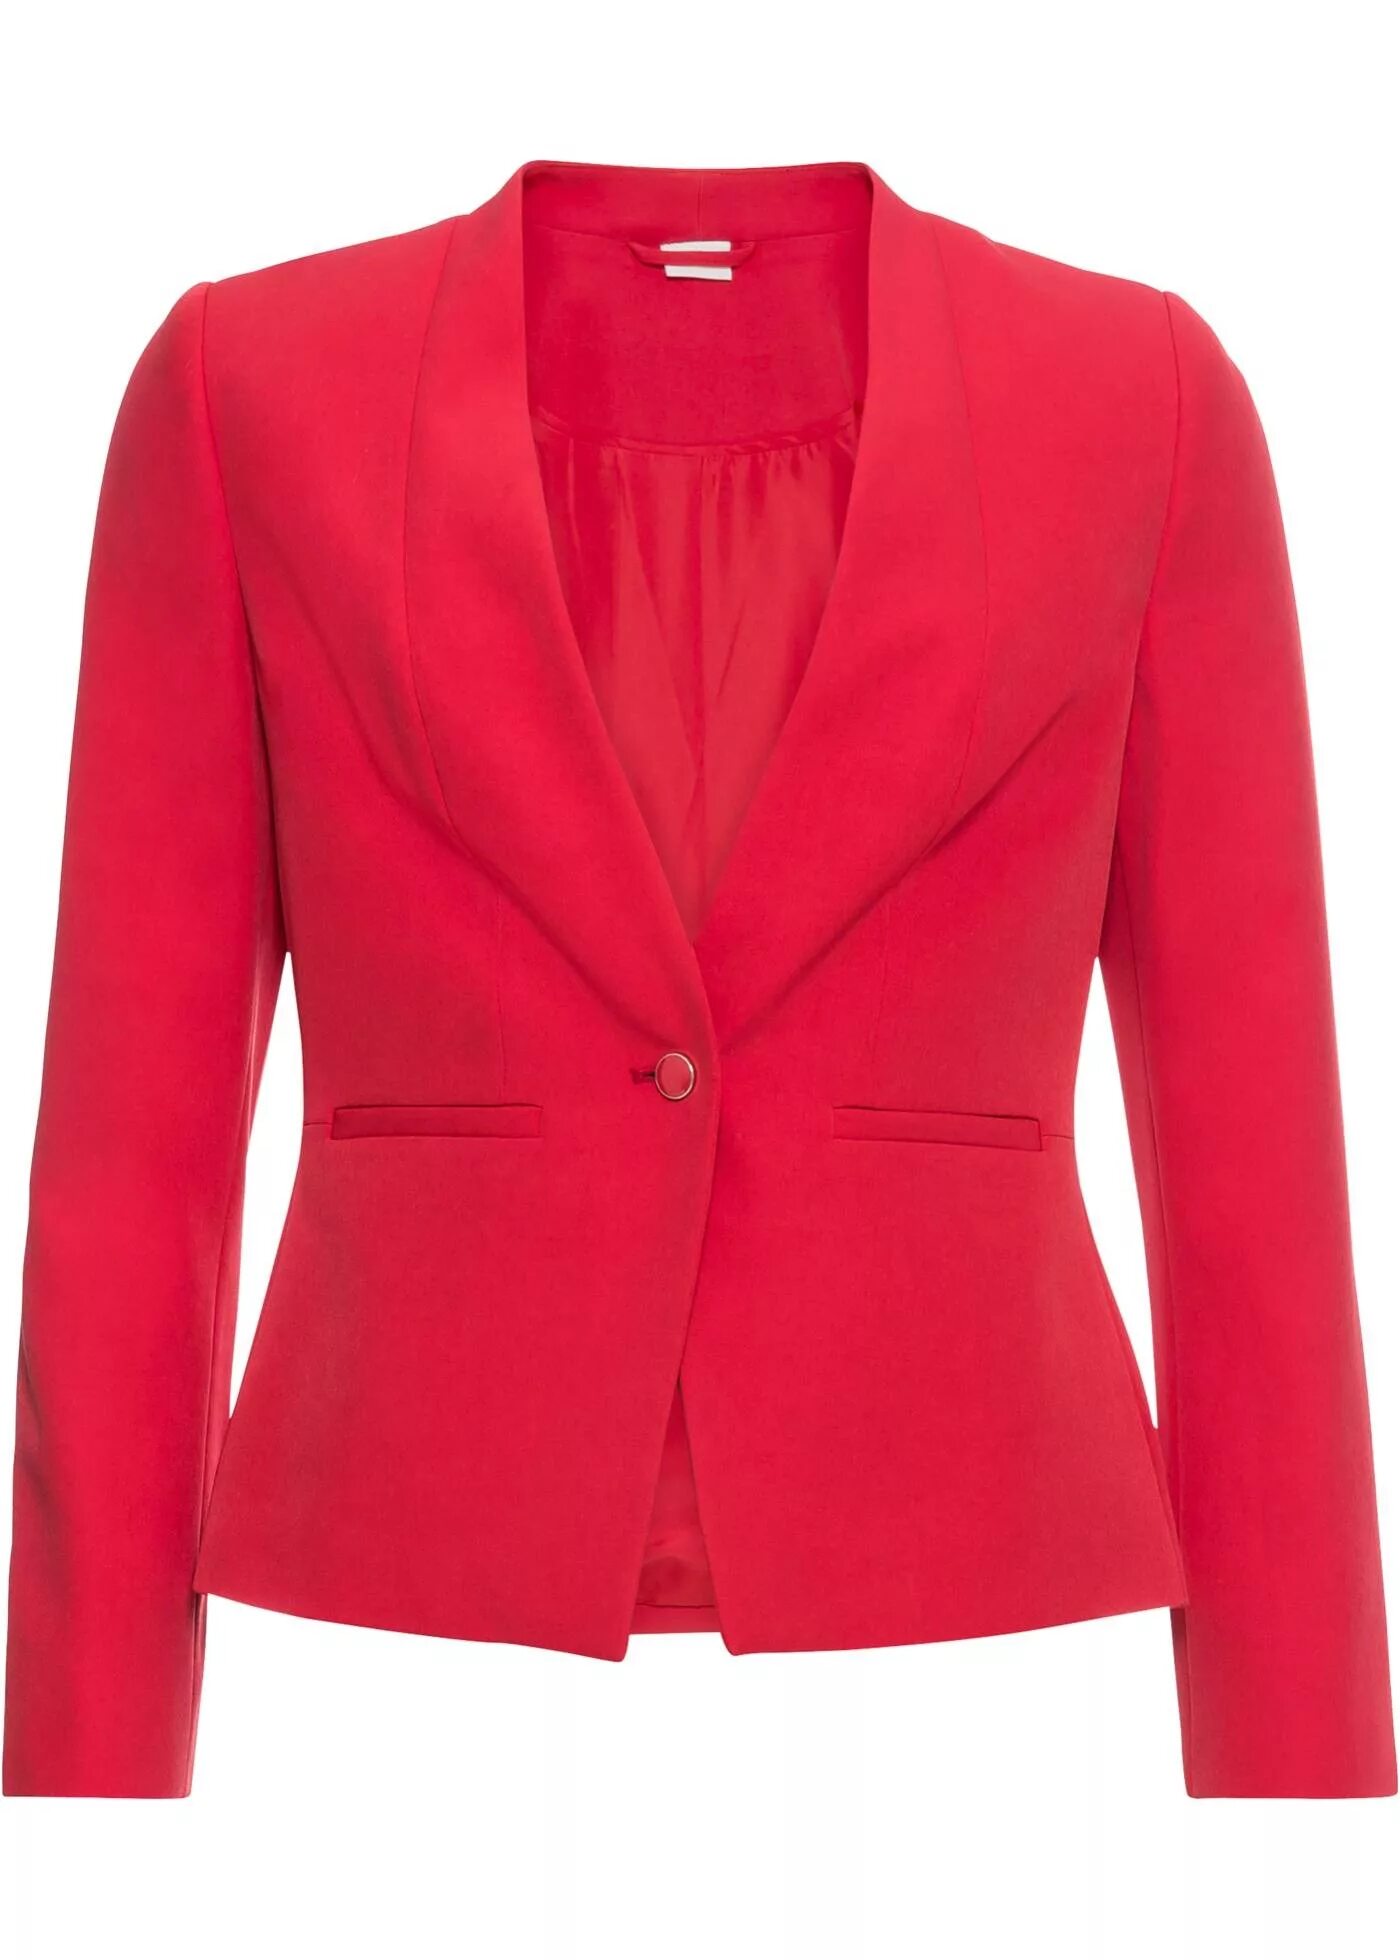 Пиджак трикотажный красный Бонприкс. Bonprix пиджак трикотажный. Жакет женский. Жакет красный. Купить недорогие женские пиджаки